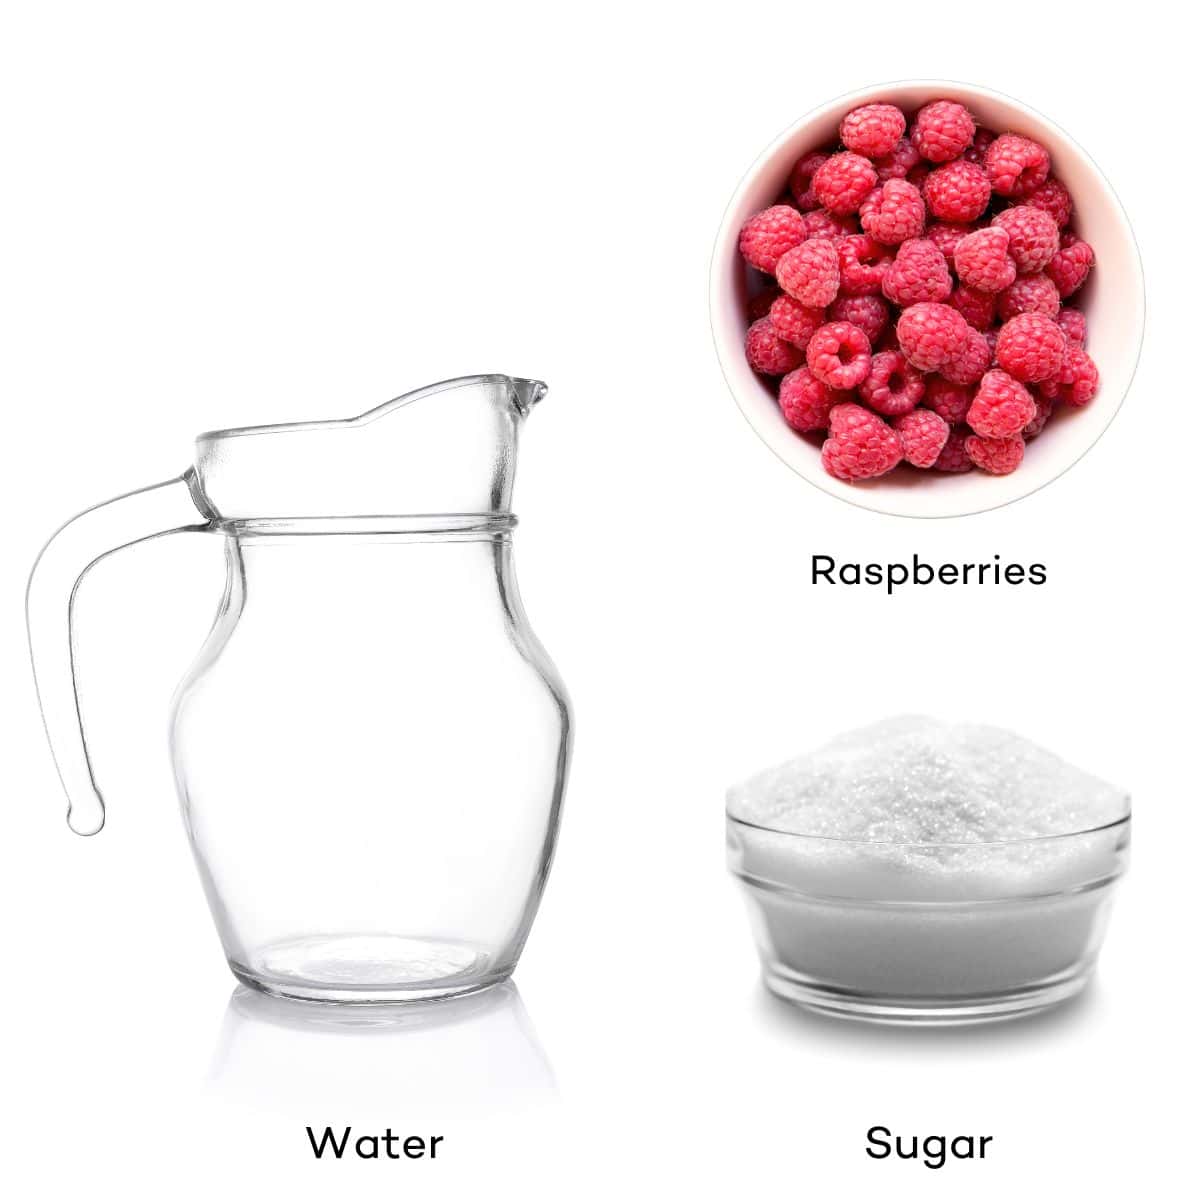 Ingredients for raspberry simple syrup - water, sugar, raspberries.